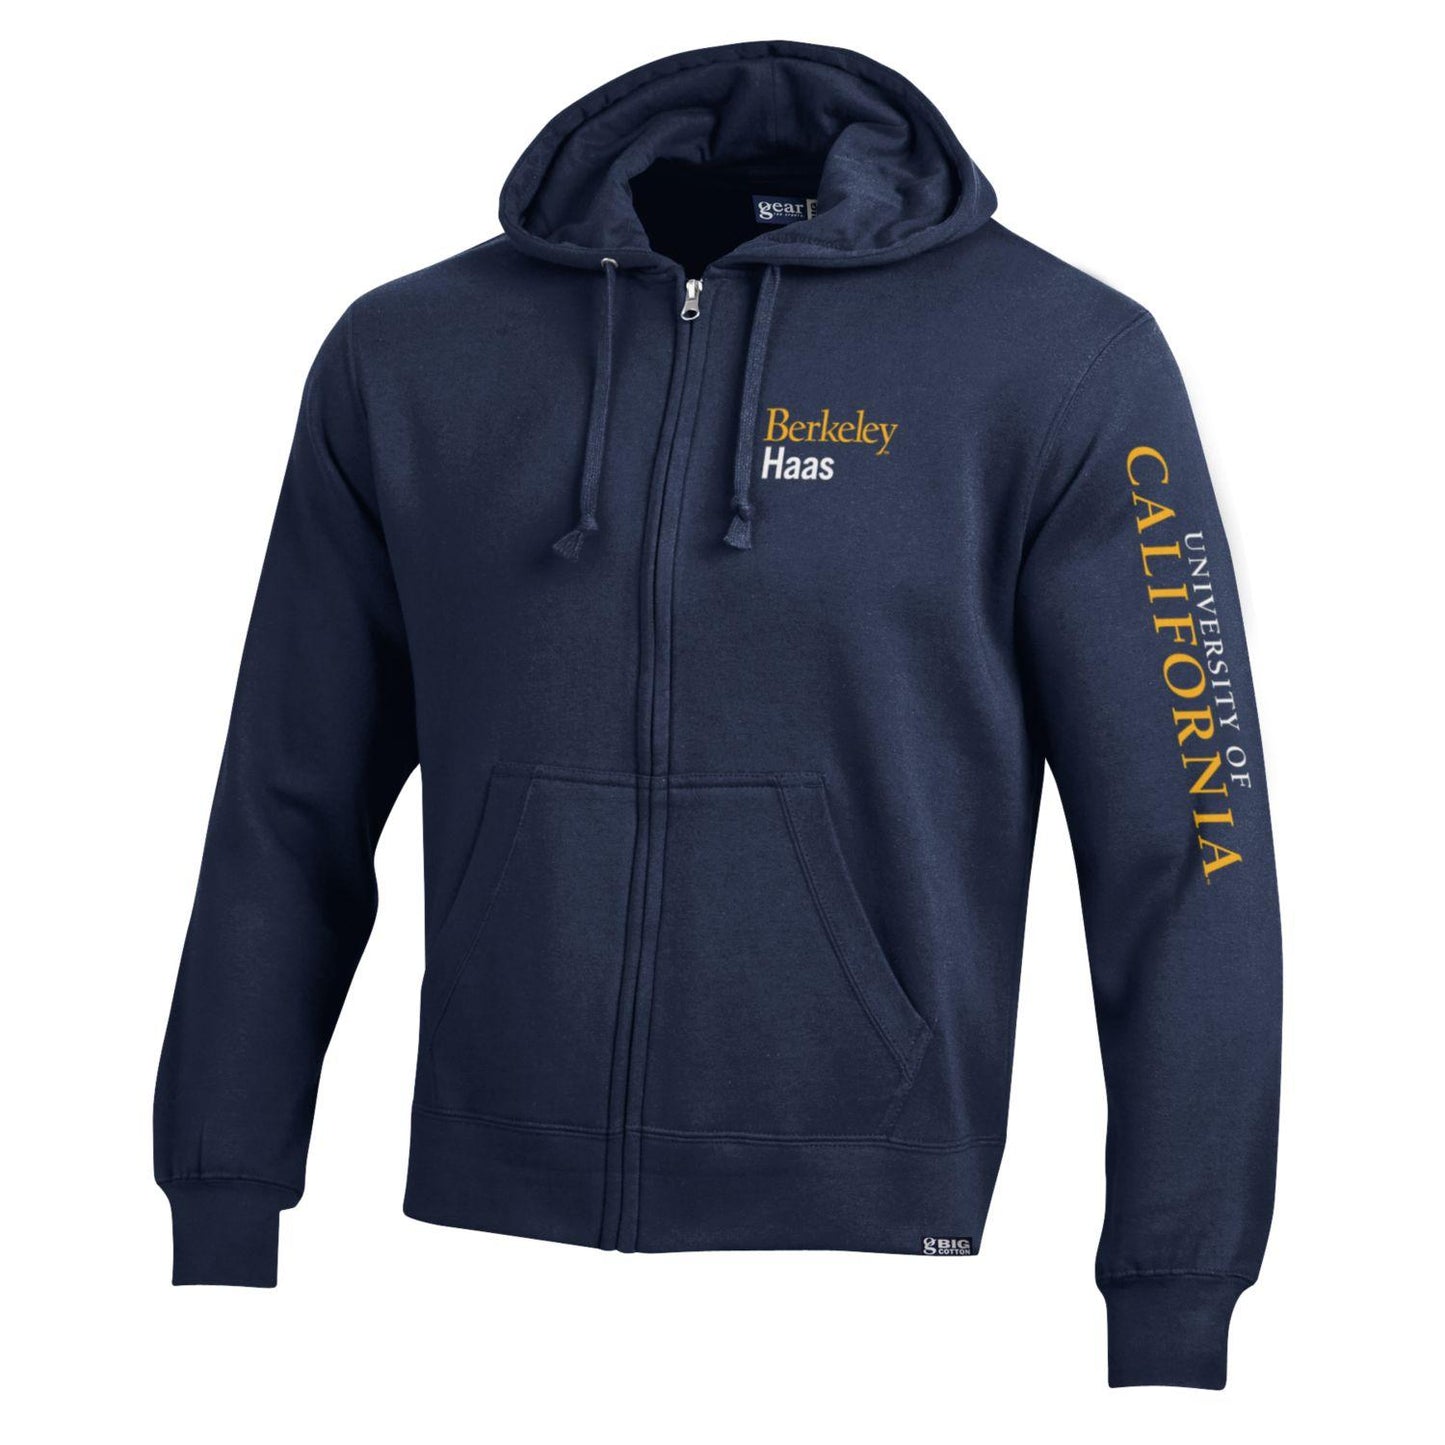 U.C. Berkeley Haas business school cotton rich zip-up hoodie sweatshirt-Navy-Shop College Wear